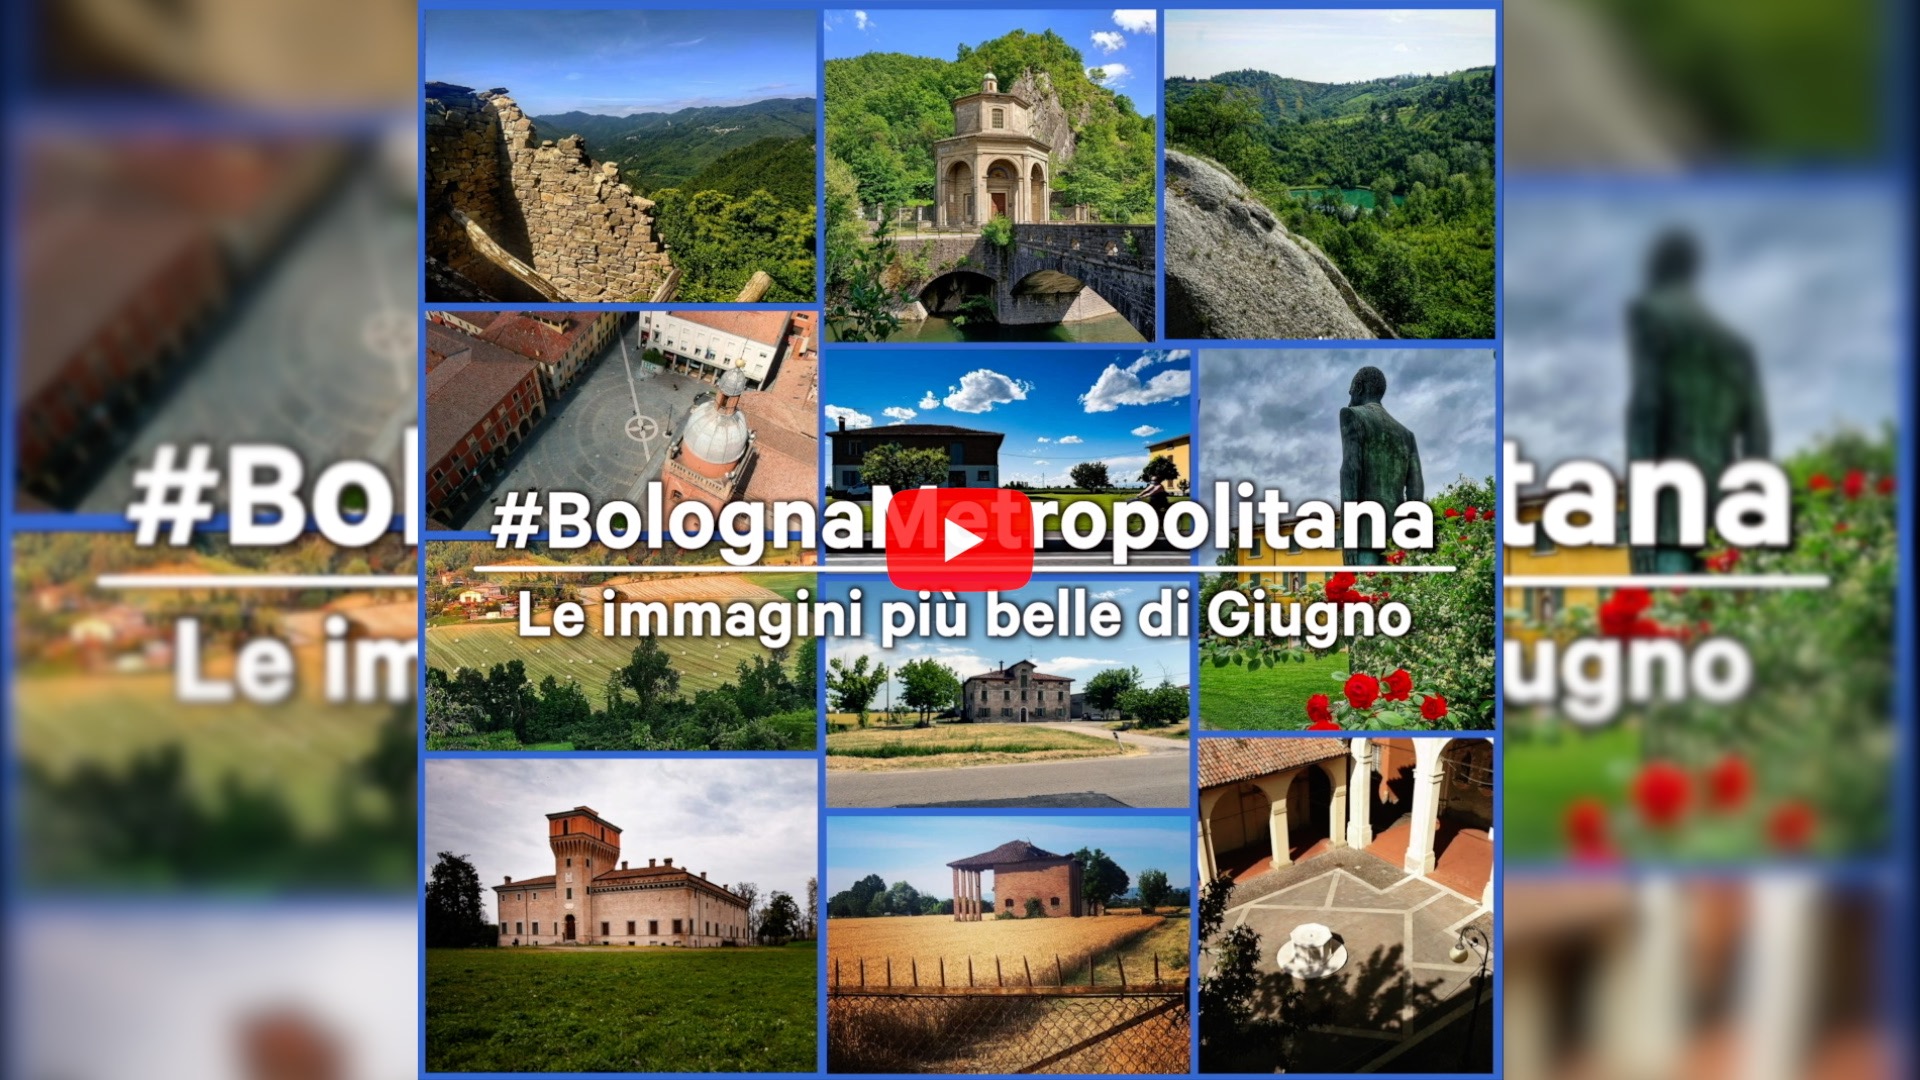 #BolognaMetropolitana - Le immagini più belle di giugno 2021